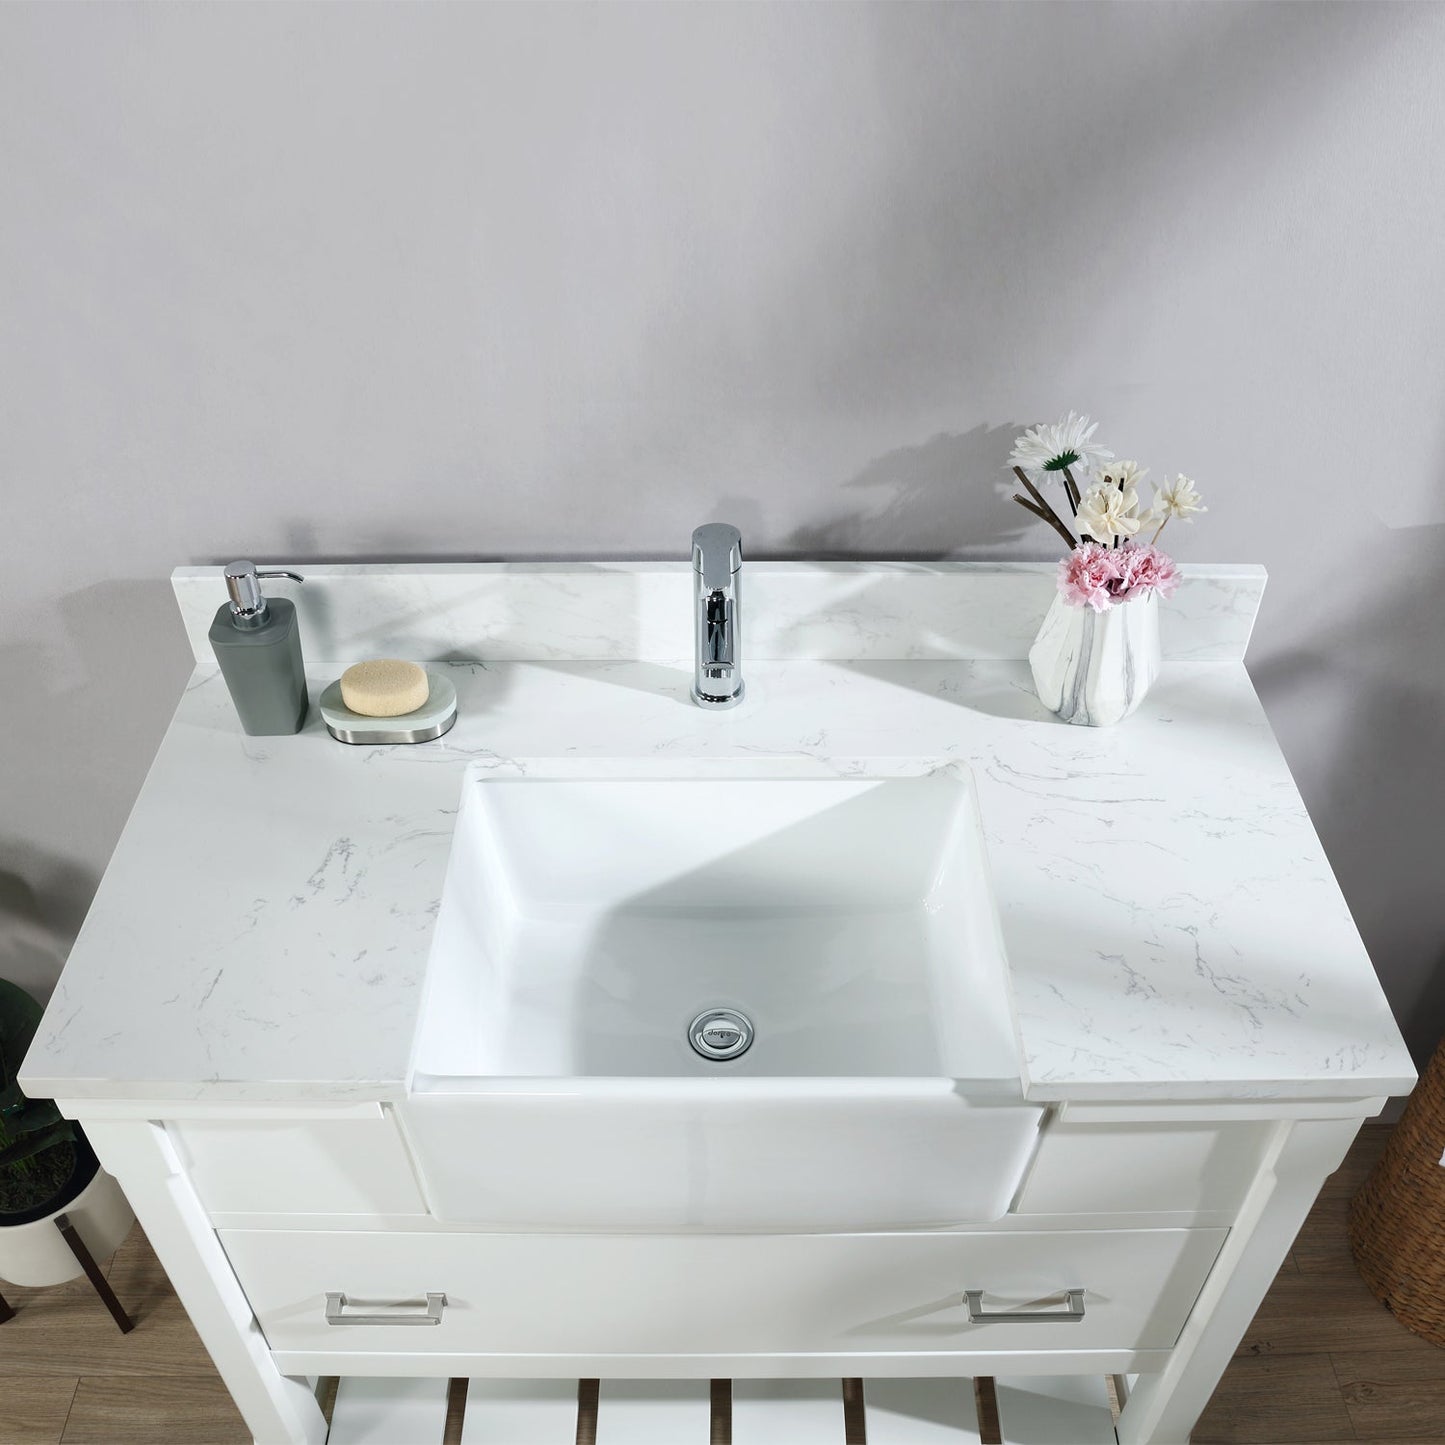 Georgia 42" Single Bathroom Vanity Set in White and Aosta White Composite Stone Top with White Farmhouse Basin without Mirror